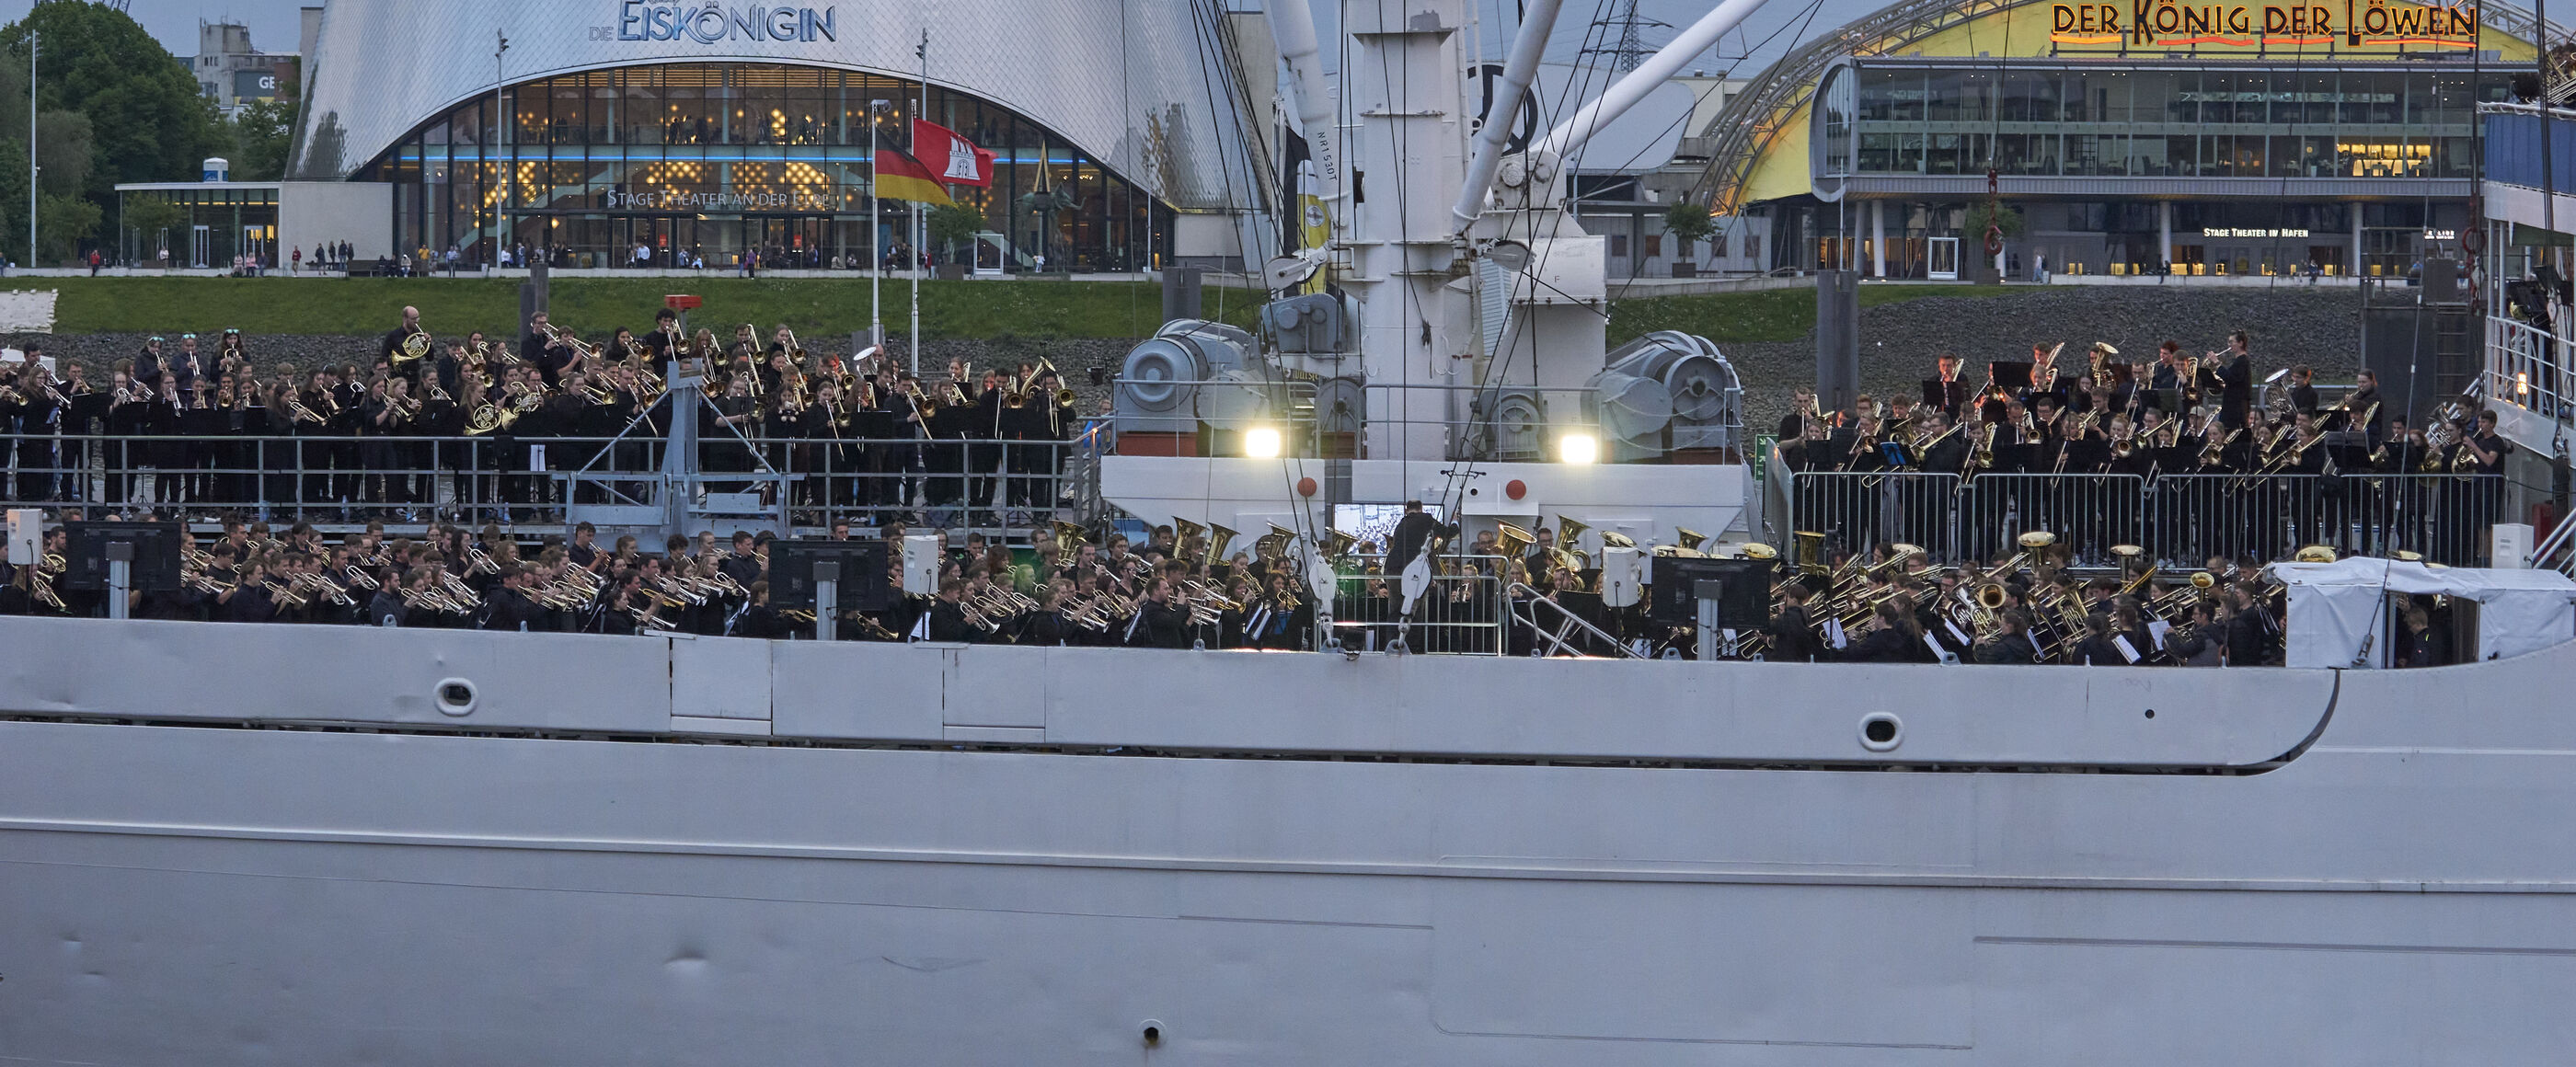 Blick auf die Seite eines Schiffs im Wasser. Das Deck ist sehr gut gefüllt mit Menschen, die teils Instrumente in Händen halten. 